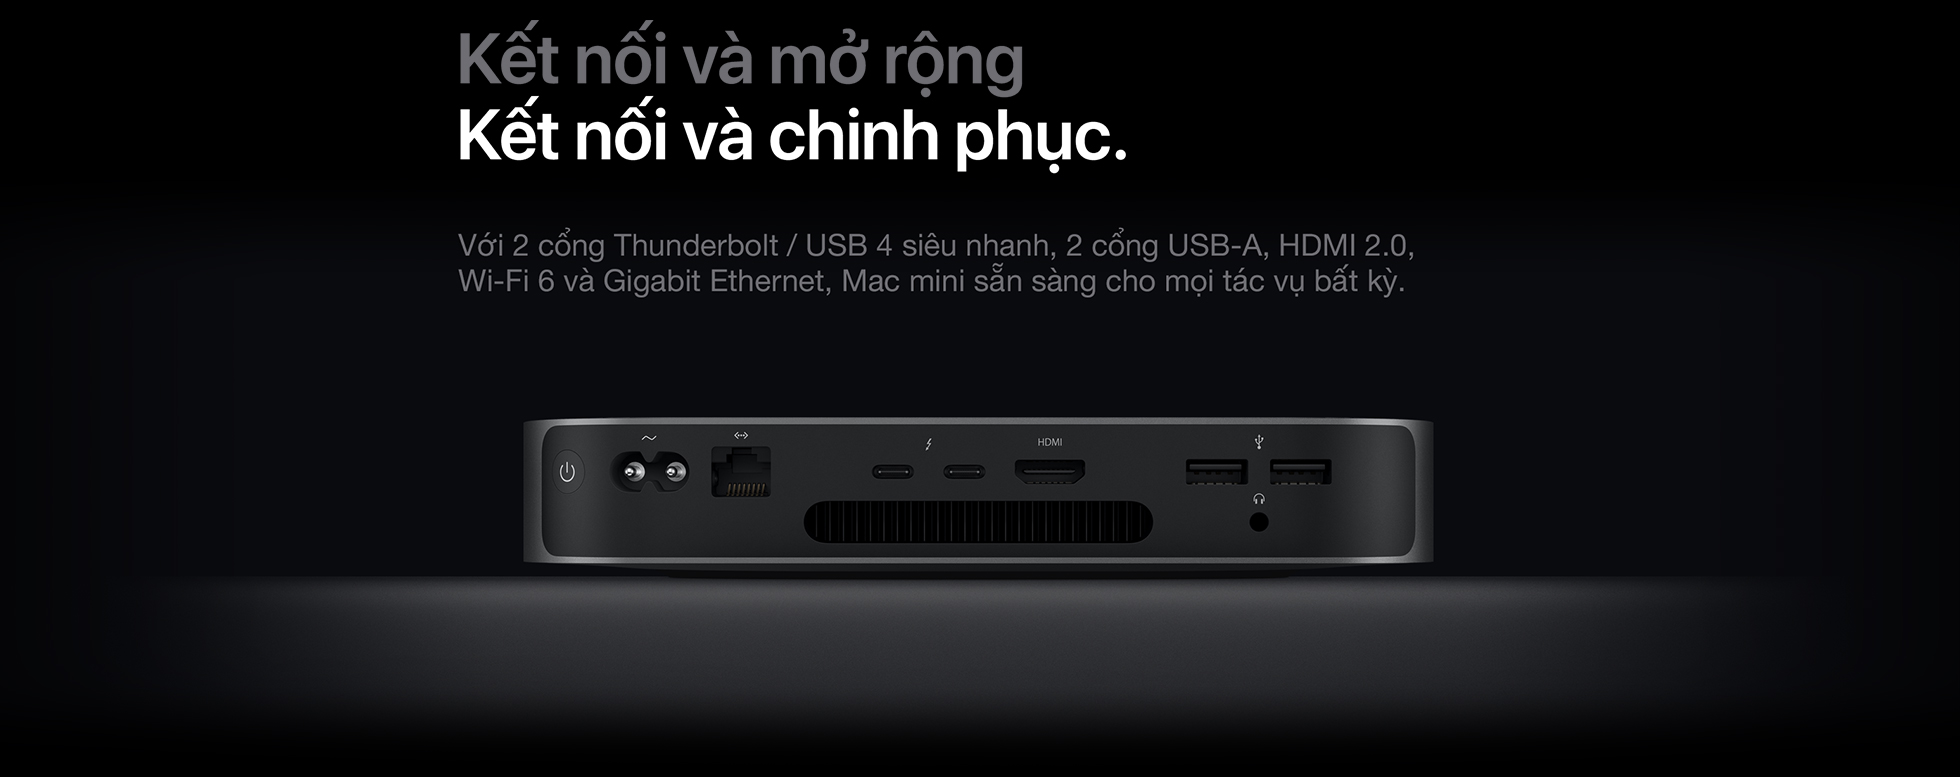 Mac mini M1 2020 - Kết nối và mở rộng